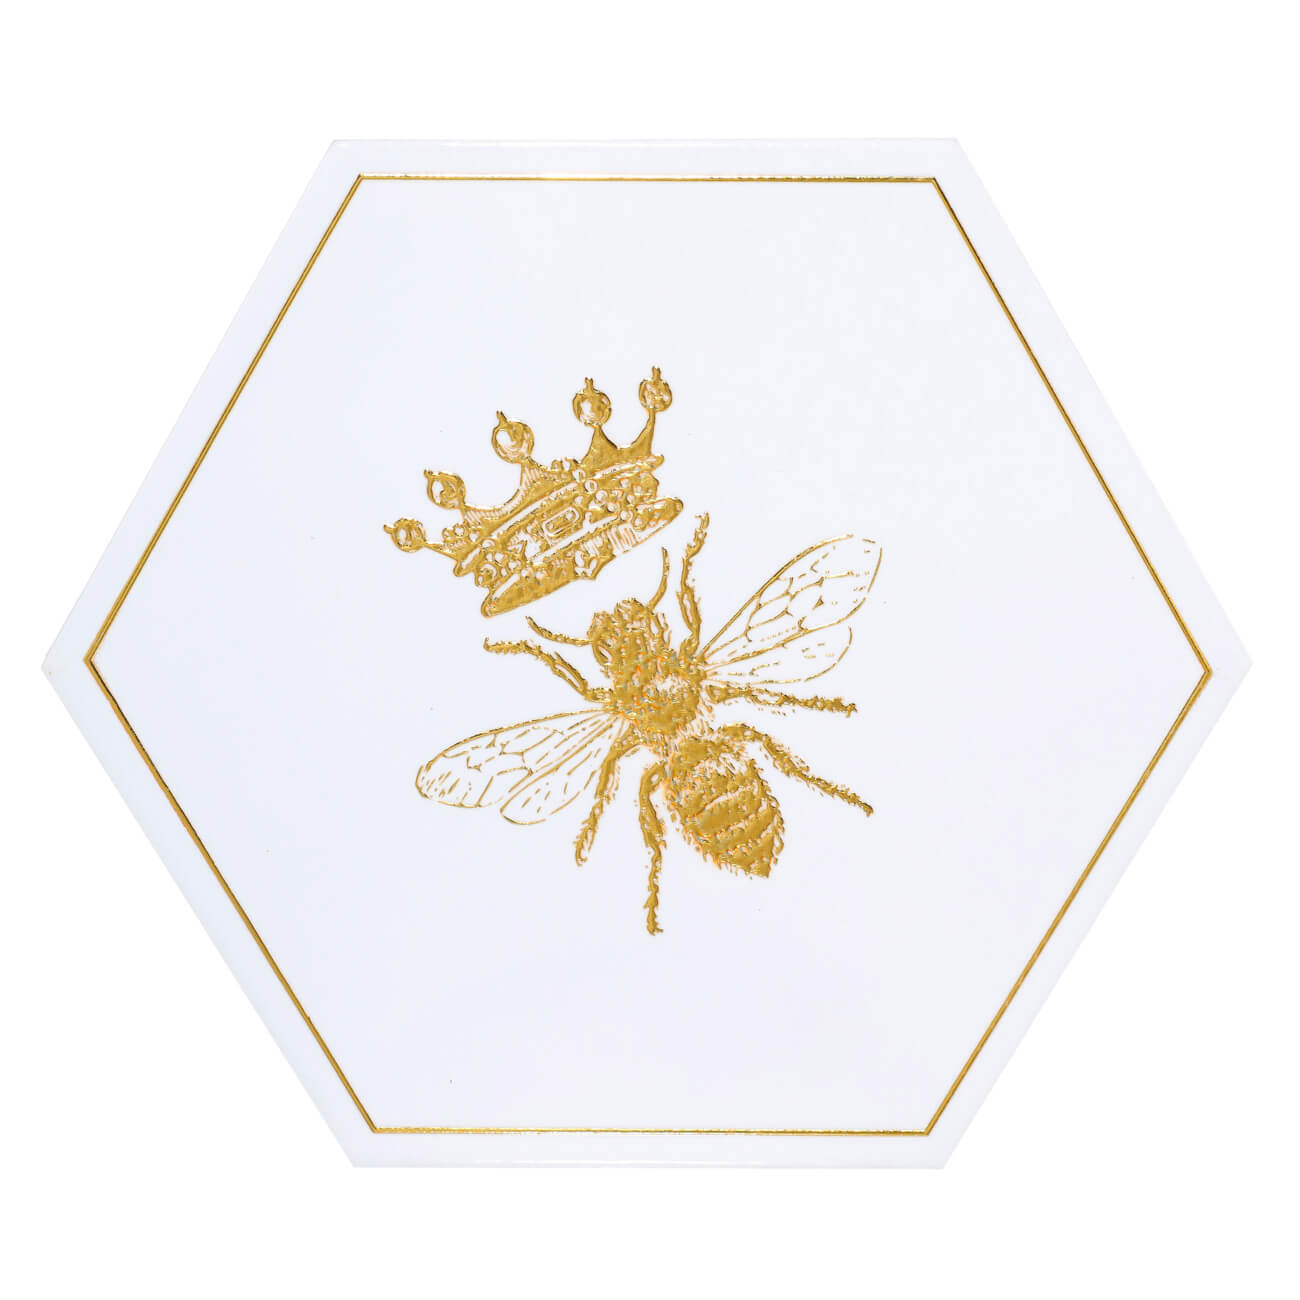 Подставка под горячее, 20 см, керамика/пробка, шестиугольная, белая, Королевская пчела, Honey подставка под кружку 11 см керамика пробка шестиугольная белая королевская пчела honey